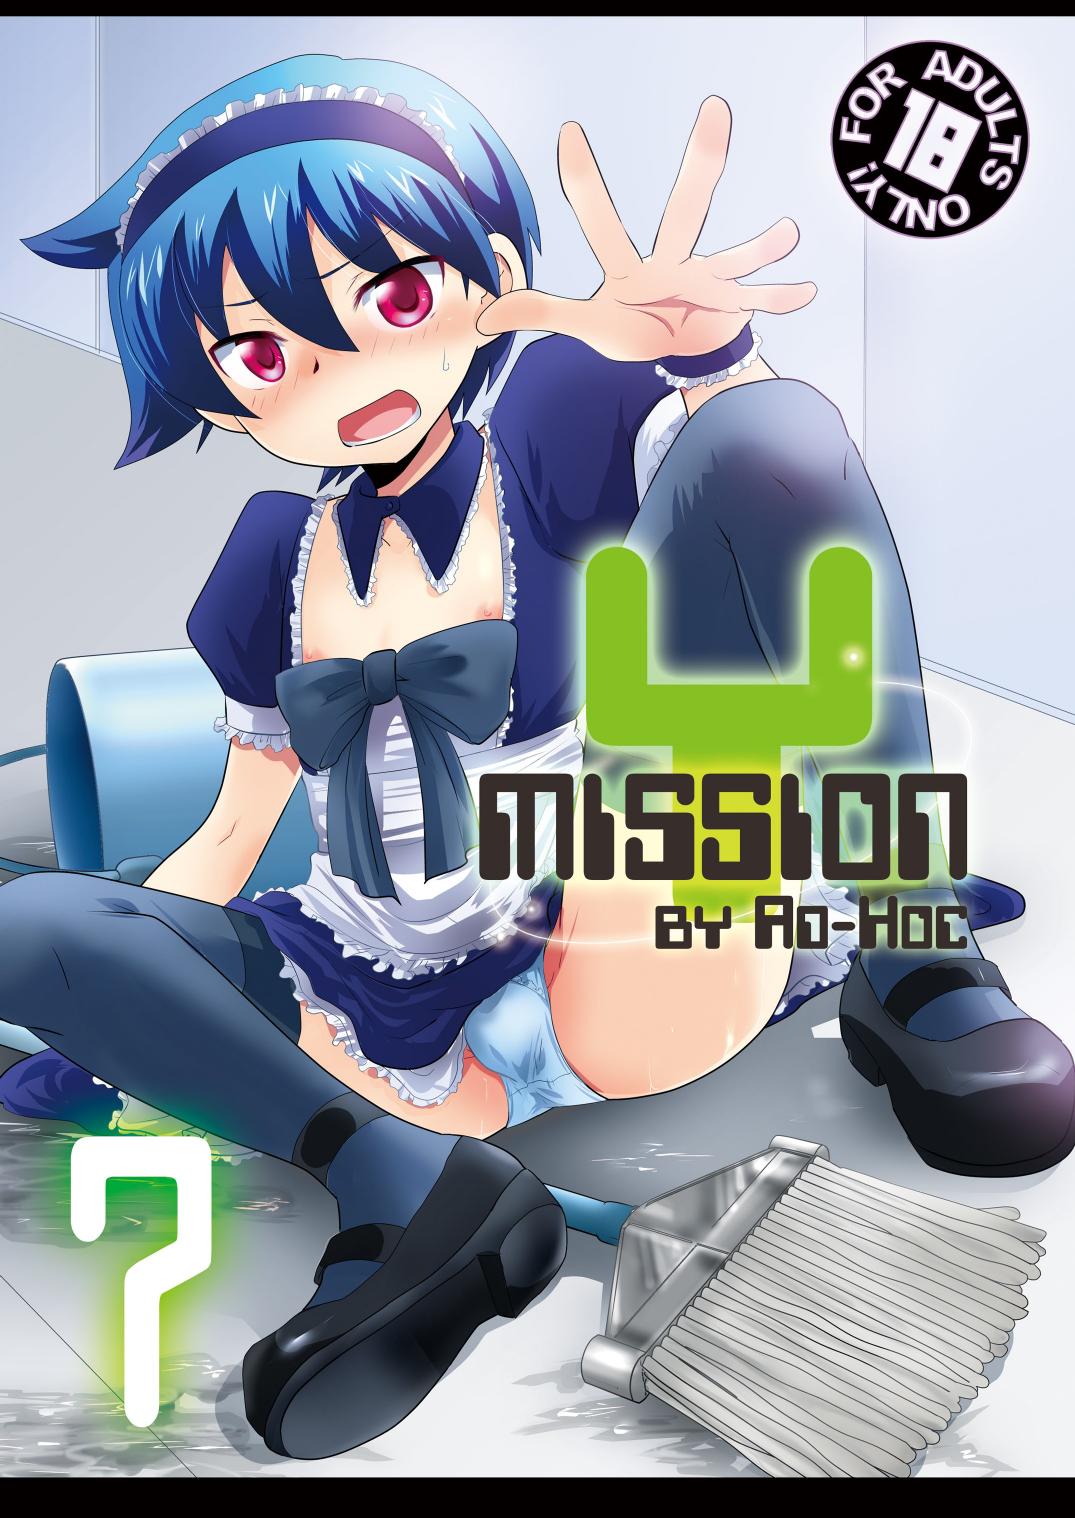 Mission Y7 1